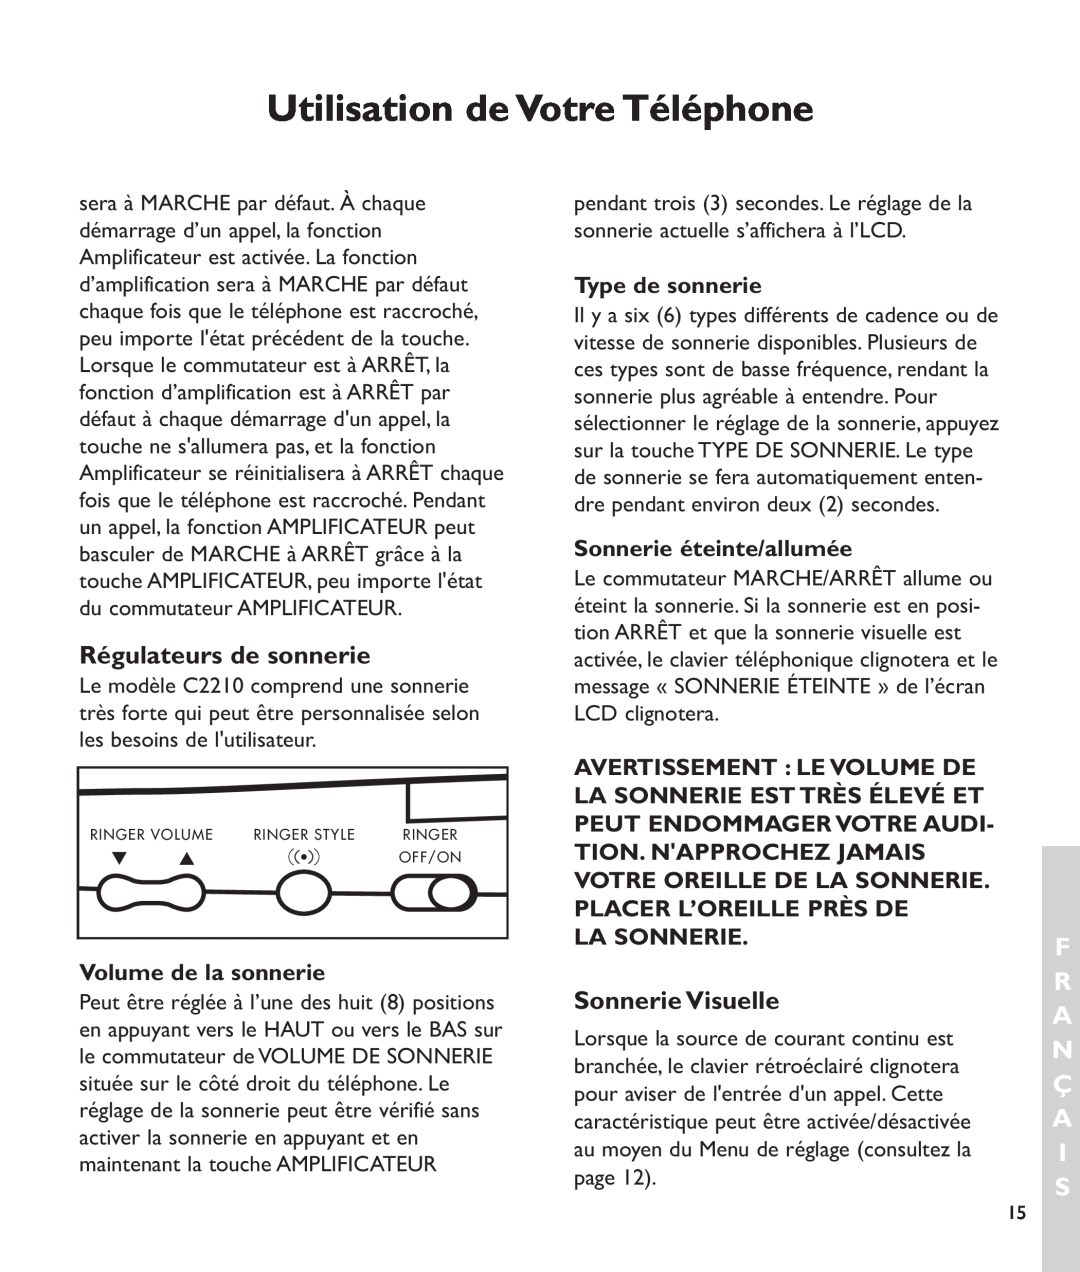 Clarity c2210 Régulateurs de sonnerie, Sonnerie Visuelle, Utilisation de Votre Téléphone, F R A N Ç A I S, La Sonnerie 